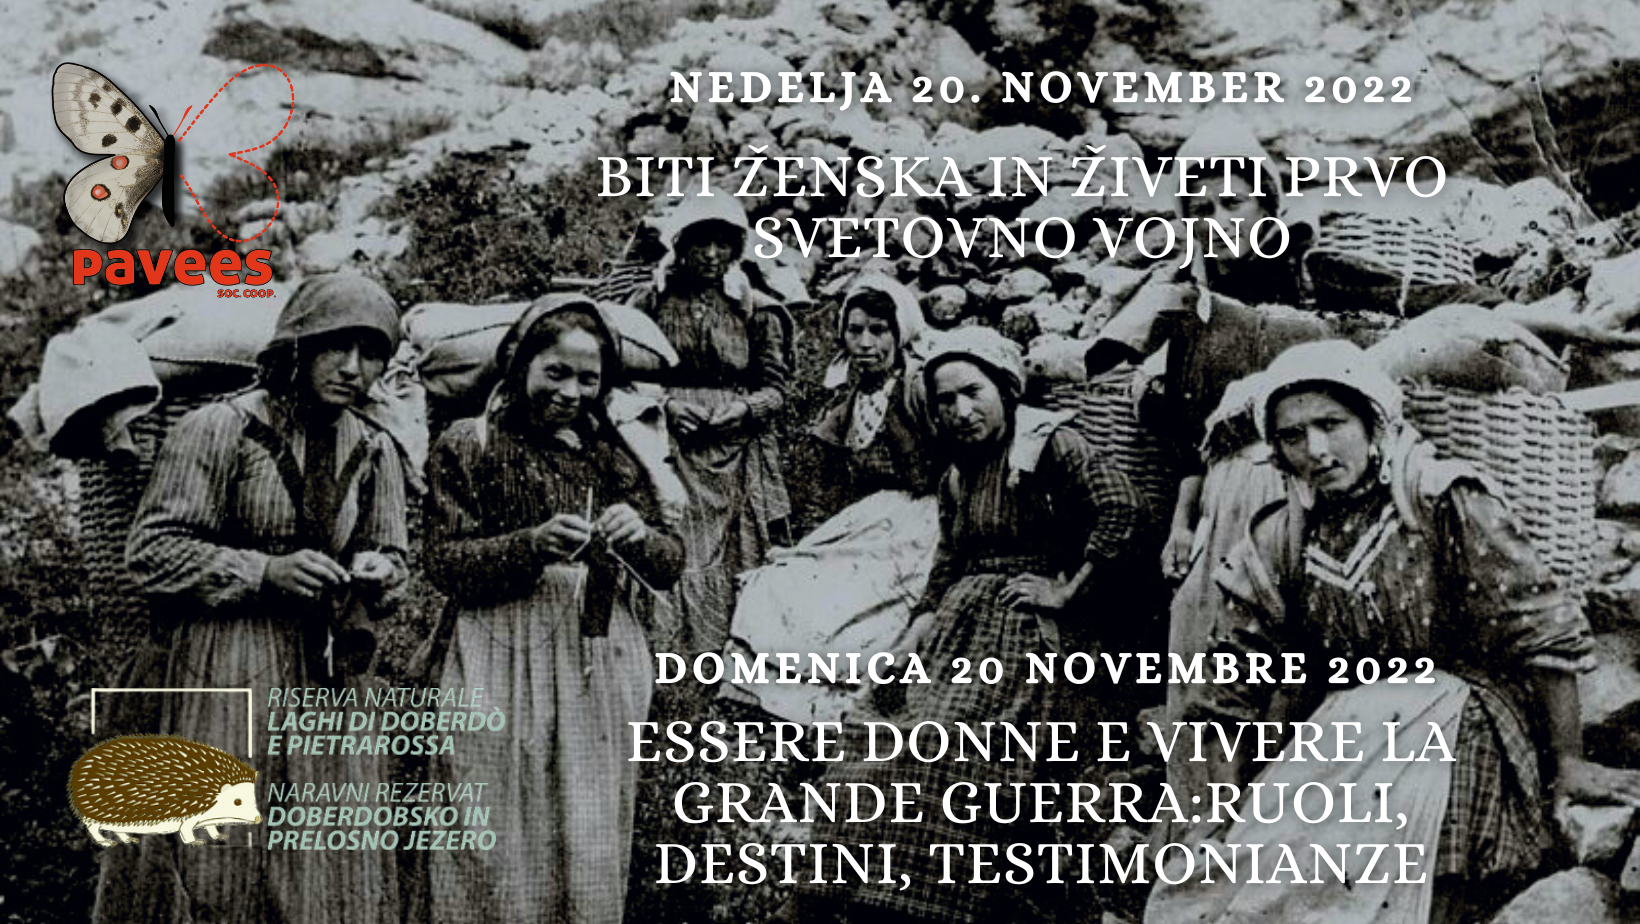 Nedelja 20. november - Biti ženska in živeti prvo svetovno vojno